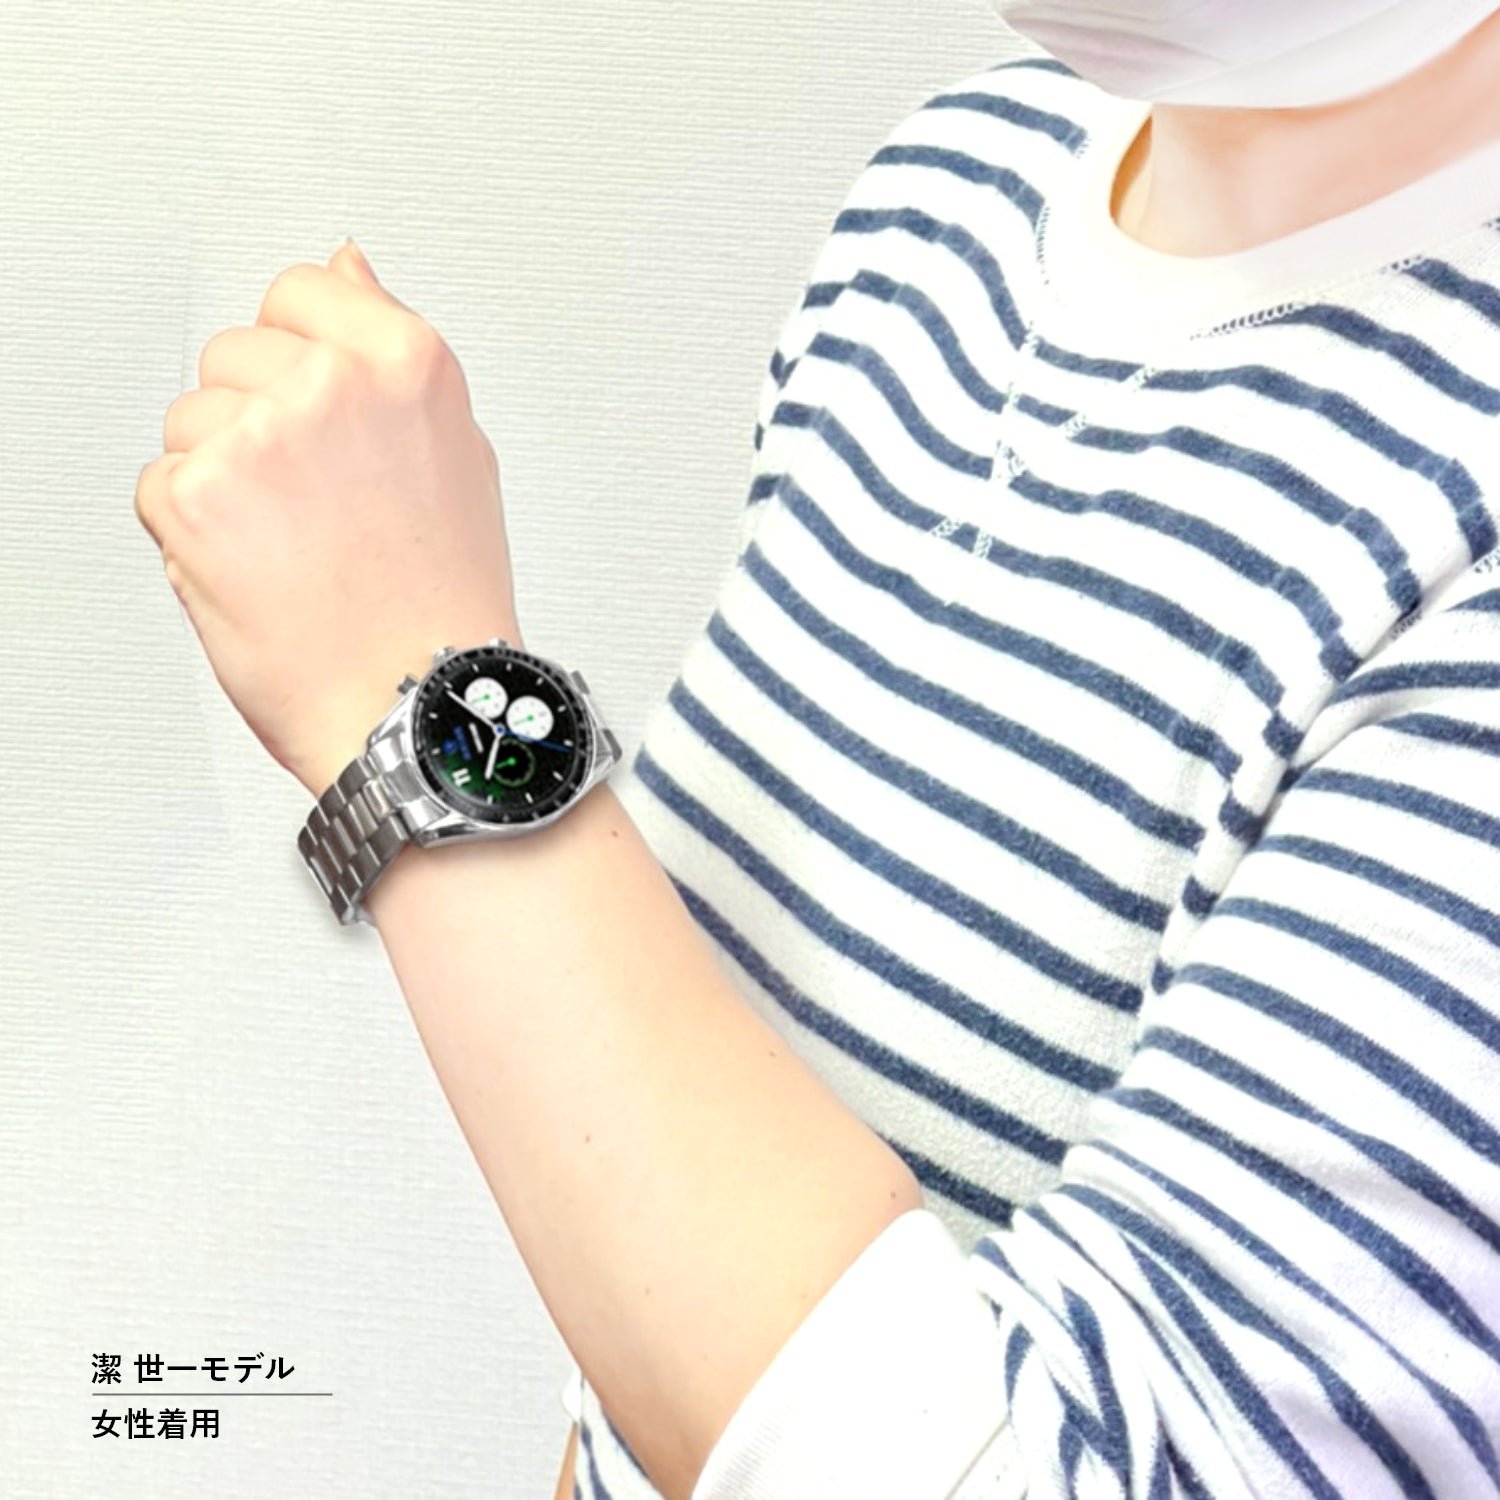 テレビアニメ「ブルーロック」オフィシャルクロノグラフ腕時計 蜂楽 廻